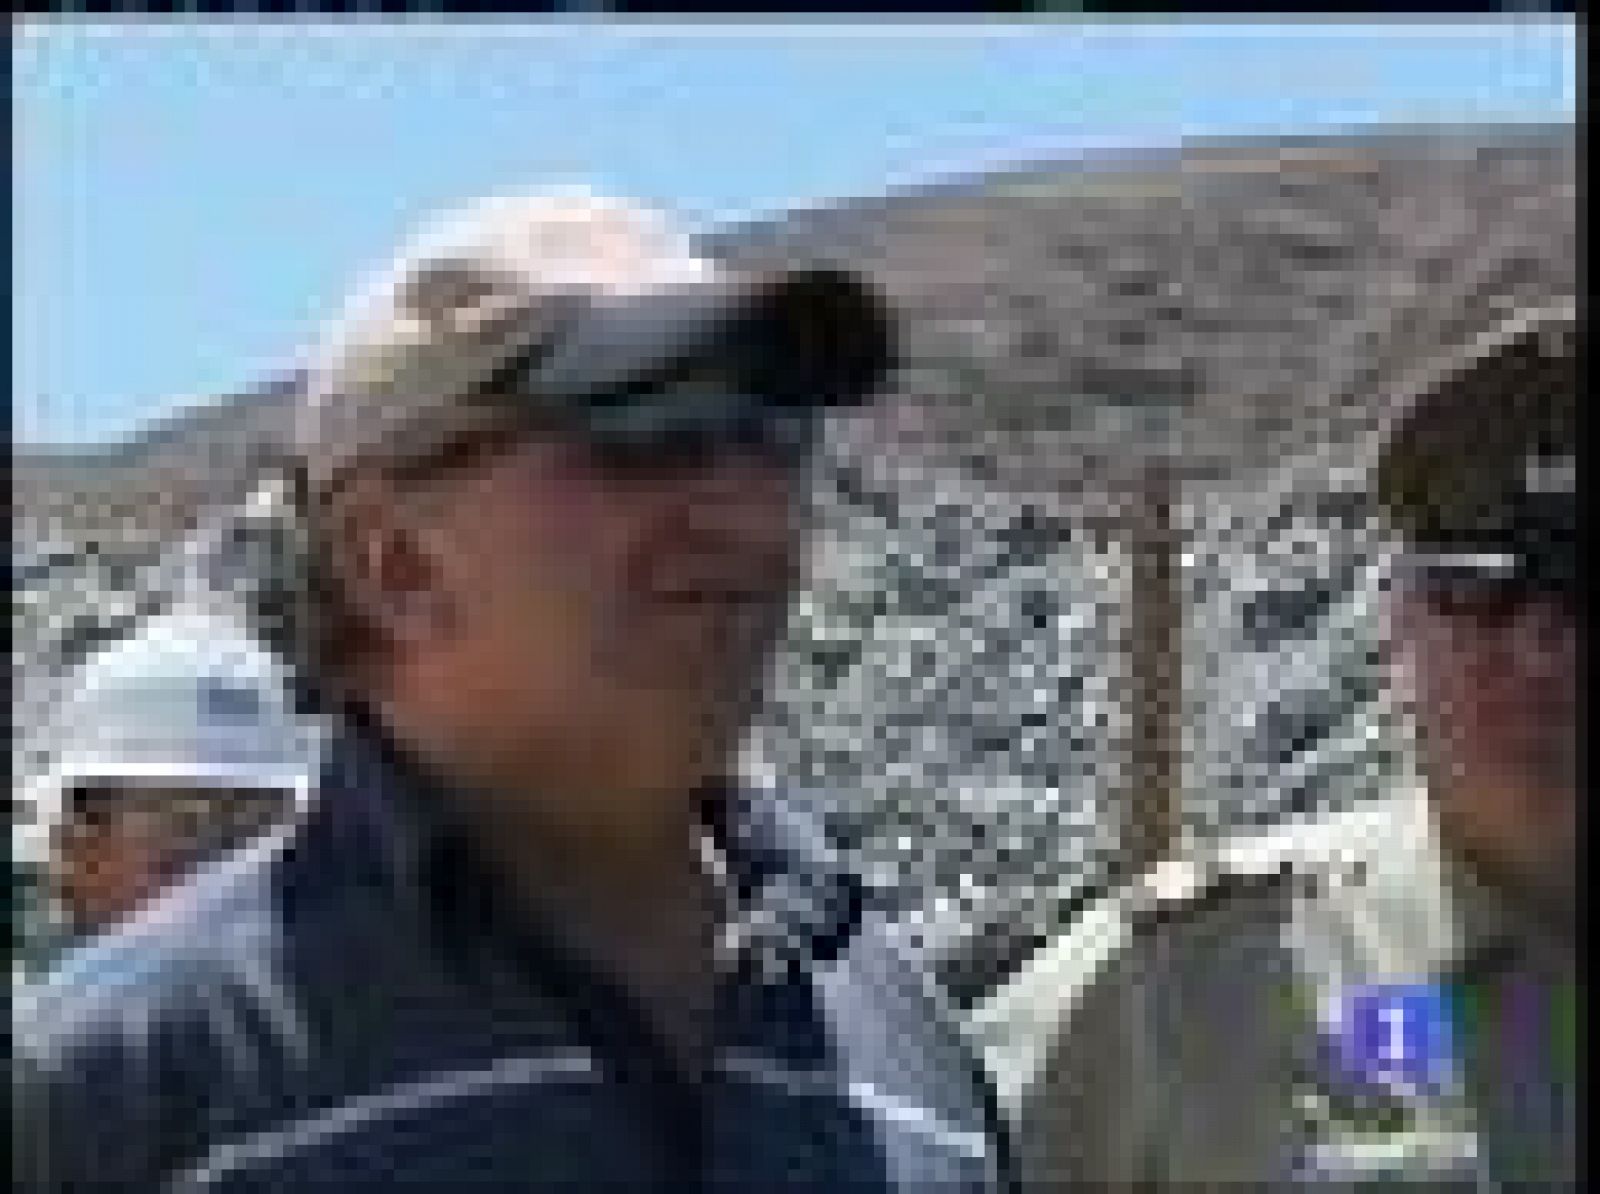  Uno de los mineros chilenos vuelve al yacimiento